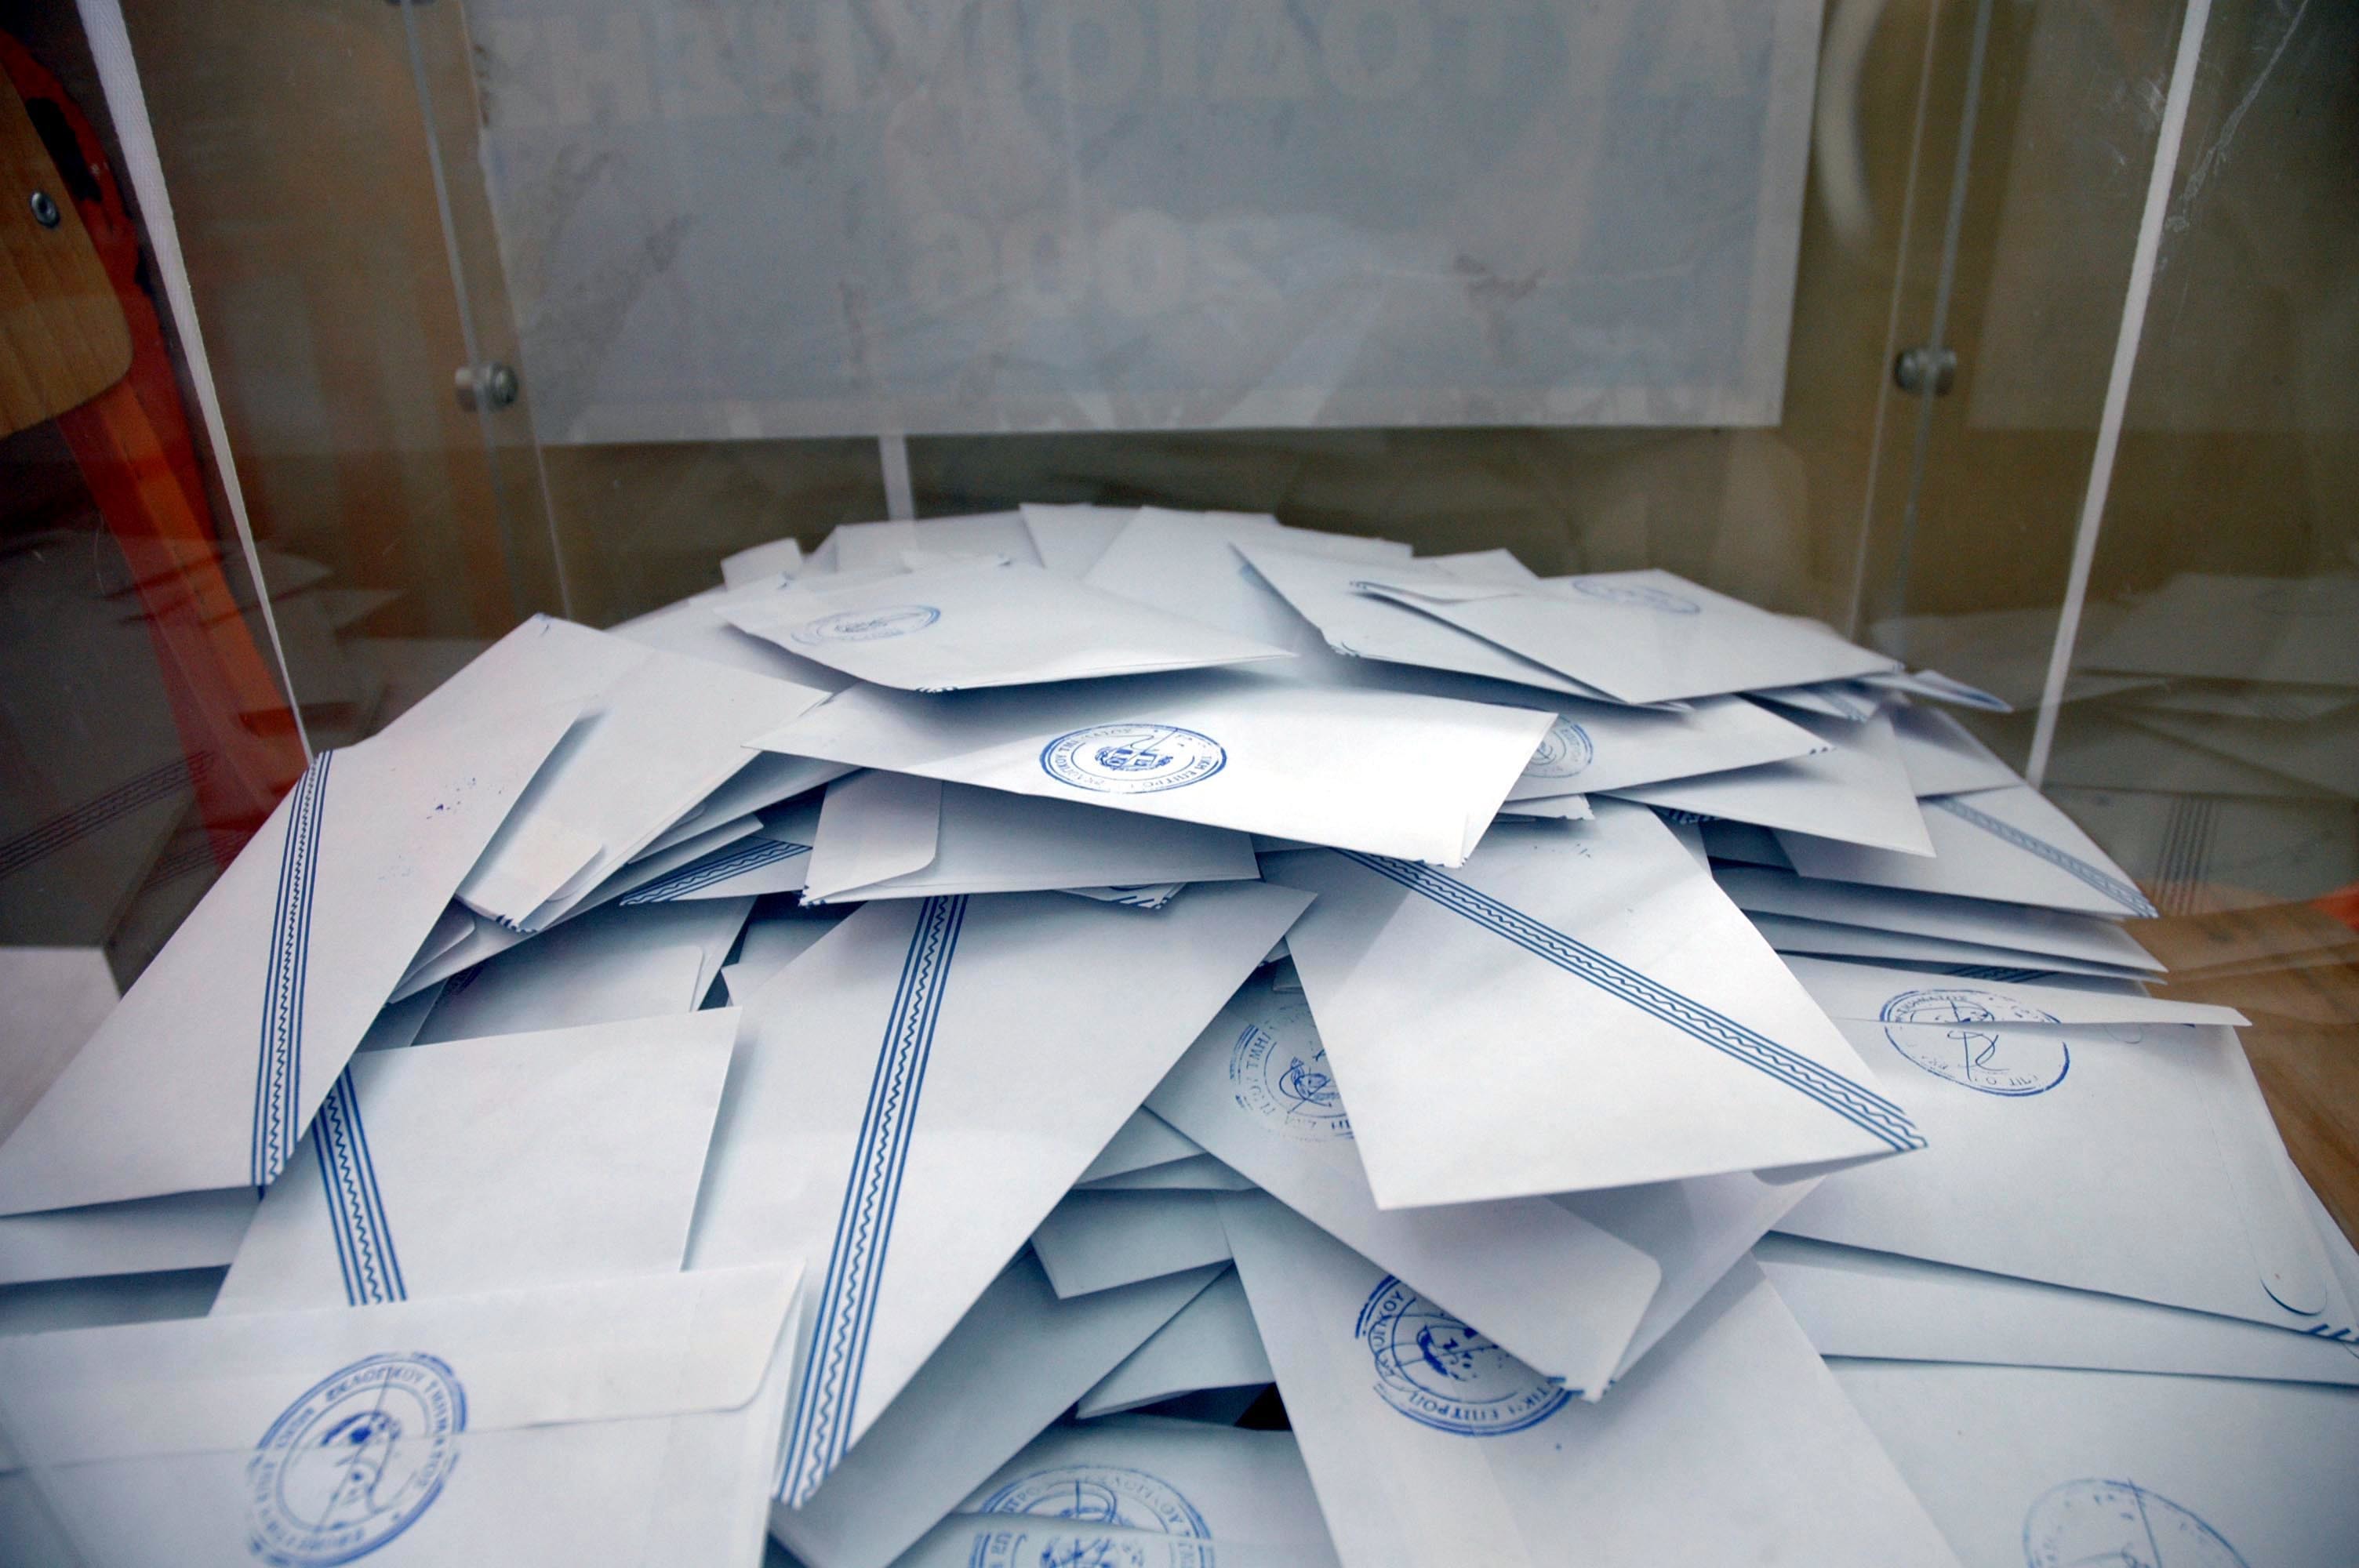 Ευρωεκλογές 2014: Δύο δημοσκοπήσεις με δύο διαφορετικά αποτελέσματα